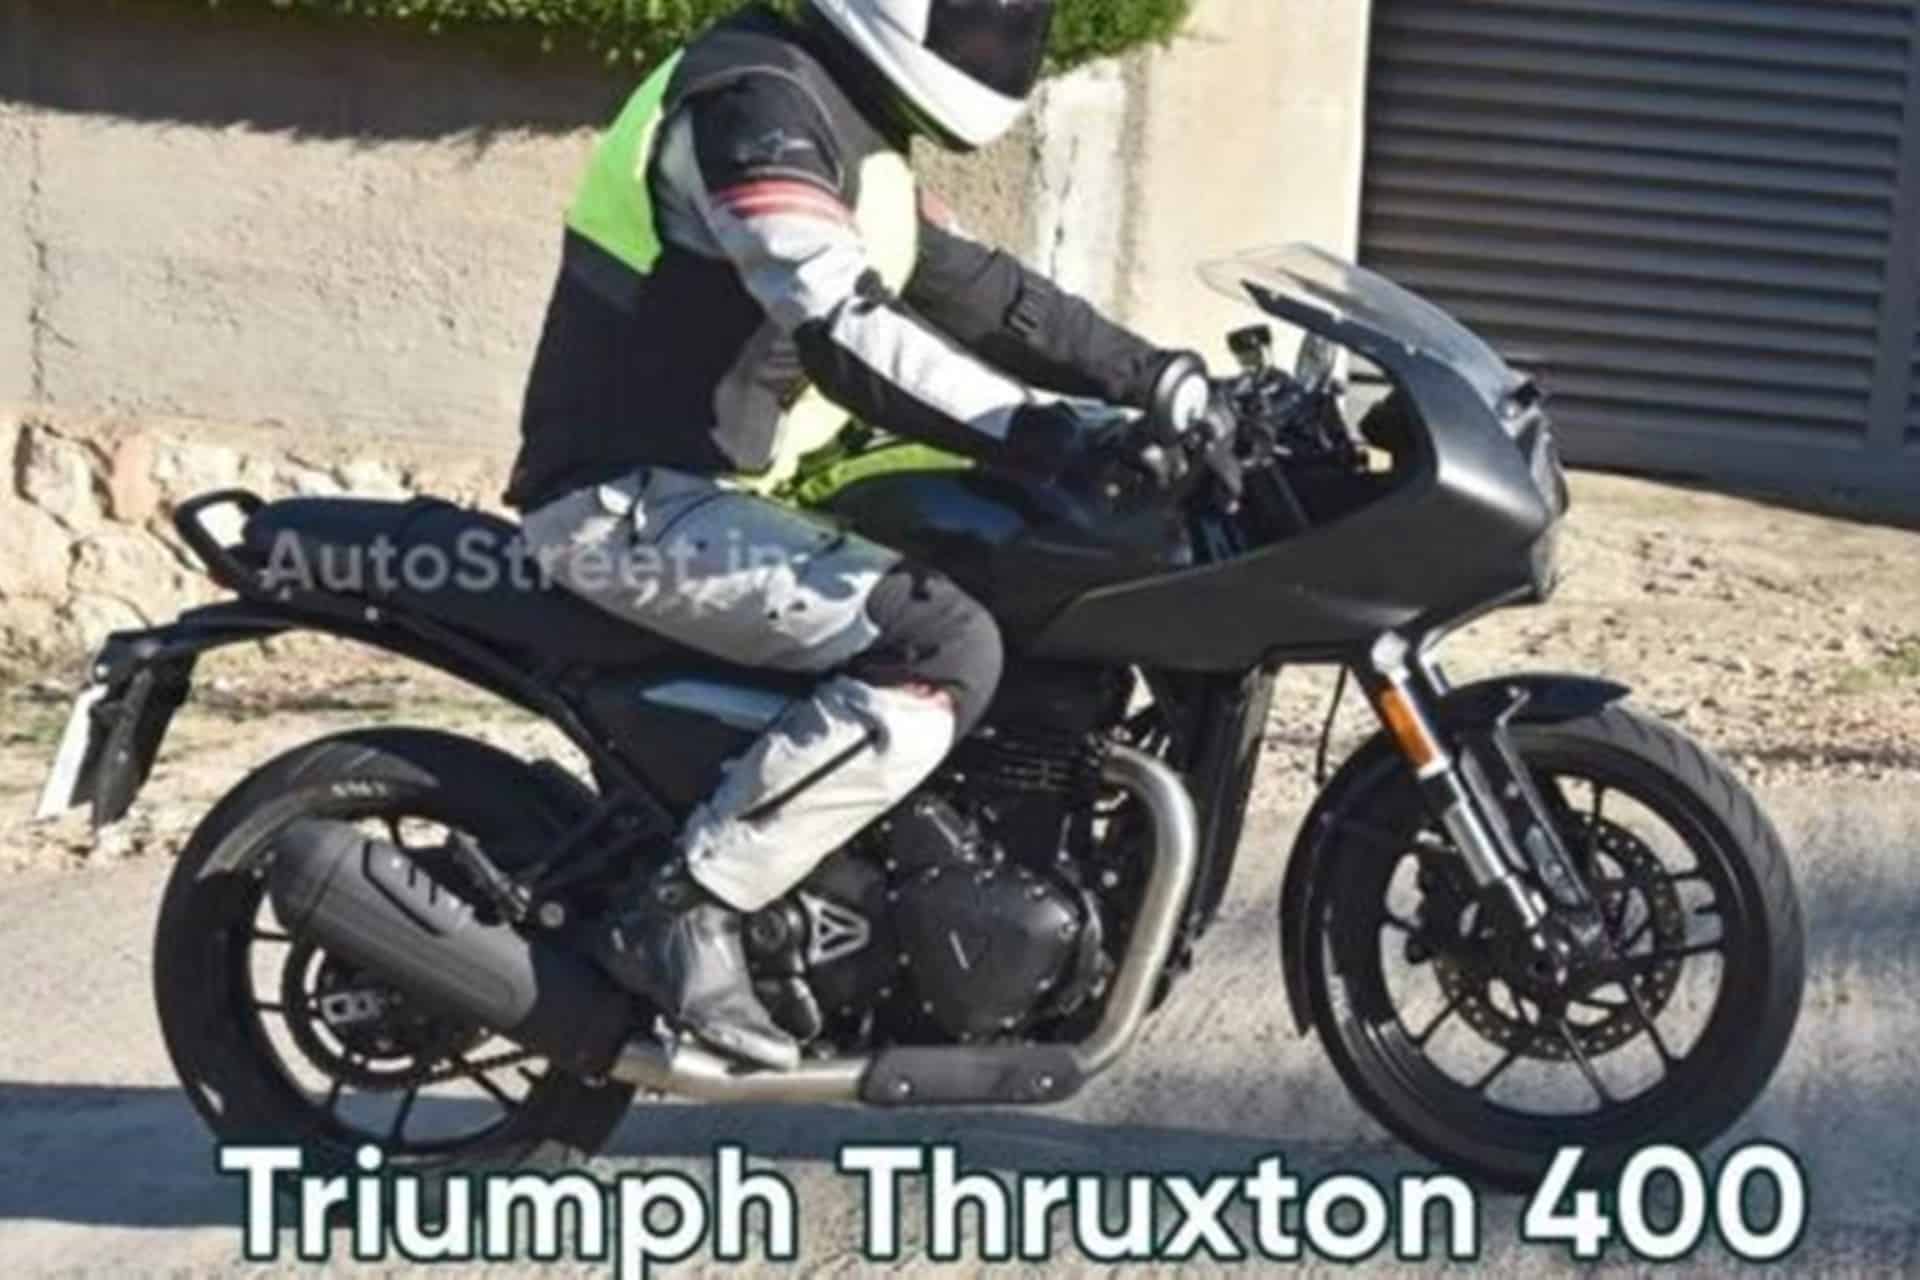 Triumph en la fase final de desarrollo de su nueva Thruxton 400